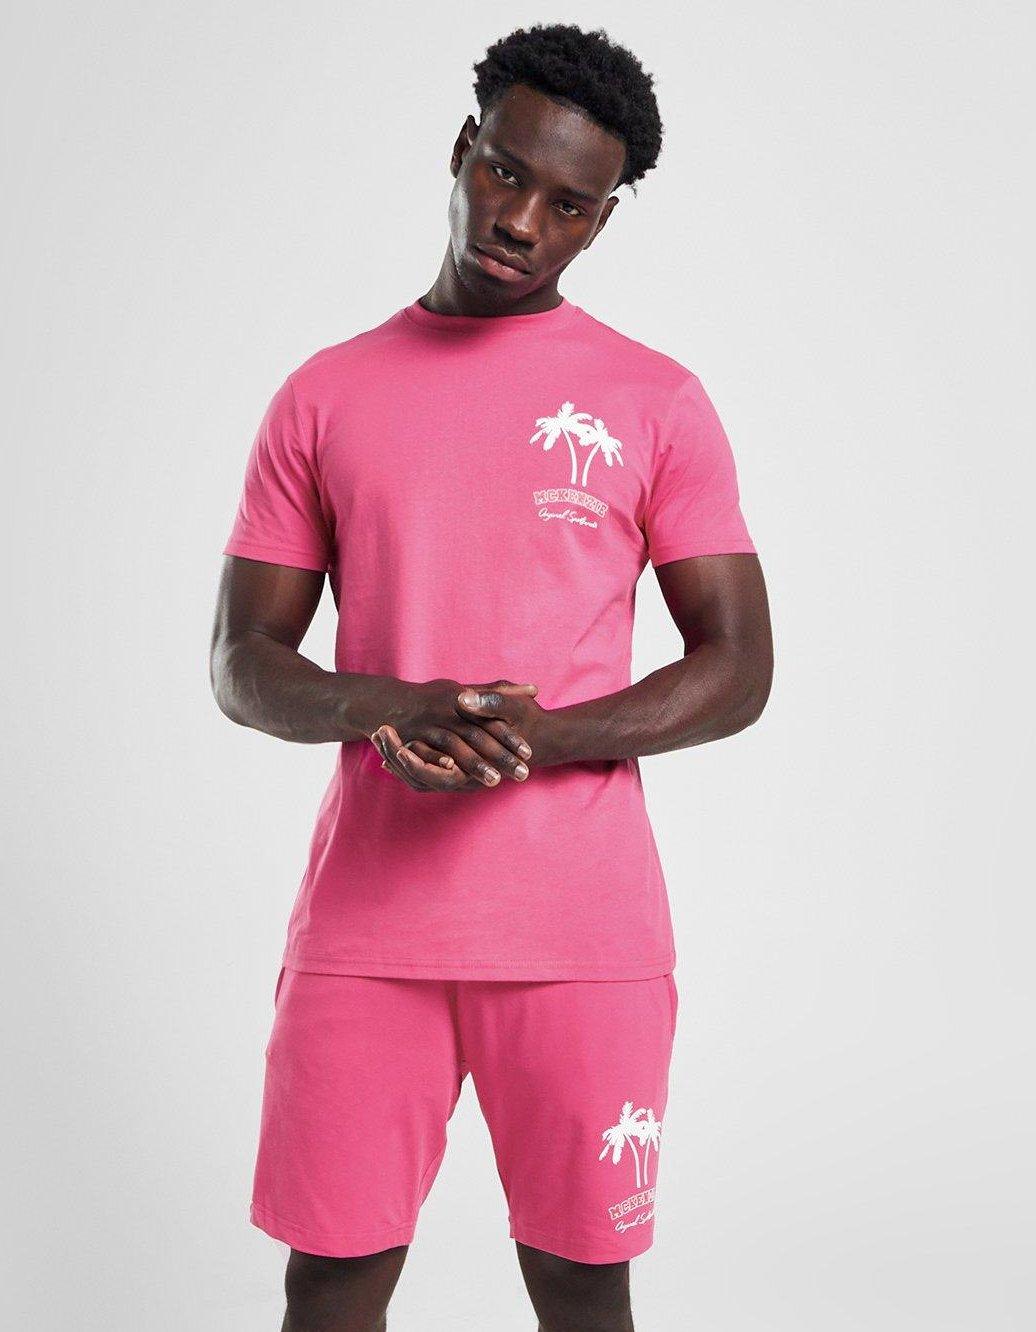 en person i rosa matchande t-shirt och shorts med palmer